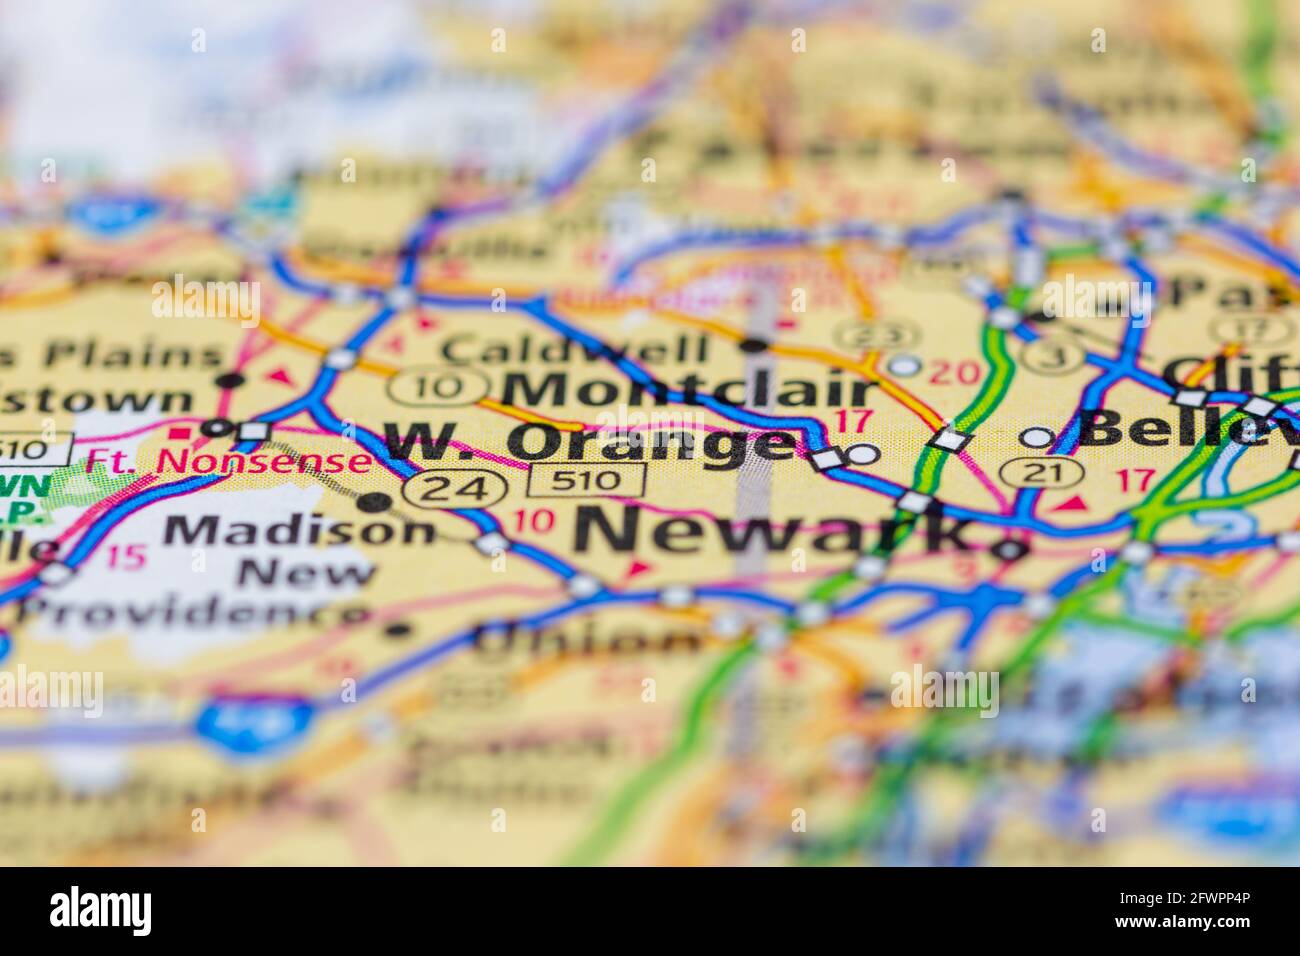 Orange Ouest New Jersey USA montré sur une carte de géographie ou carte routière Banque D'Images